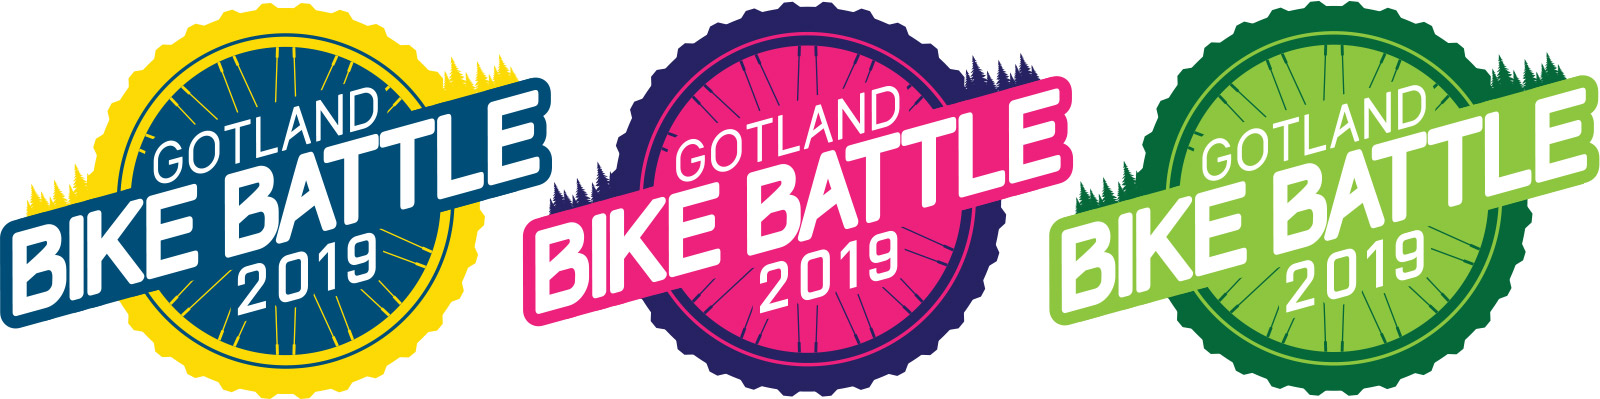 Gotland Bike Battle Logotyp Färgvarianter